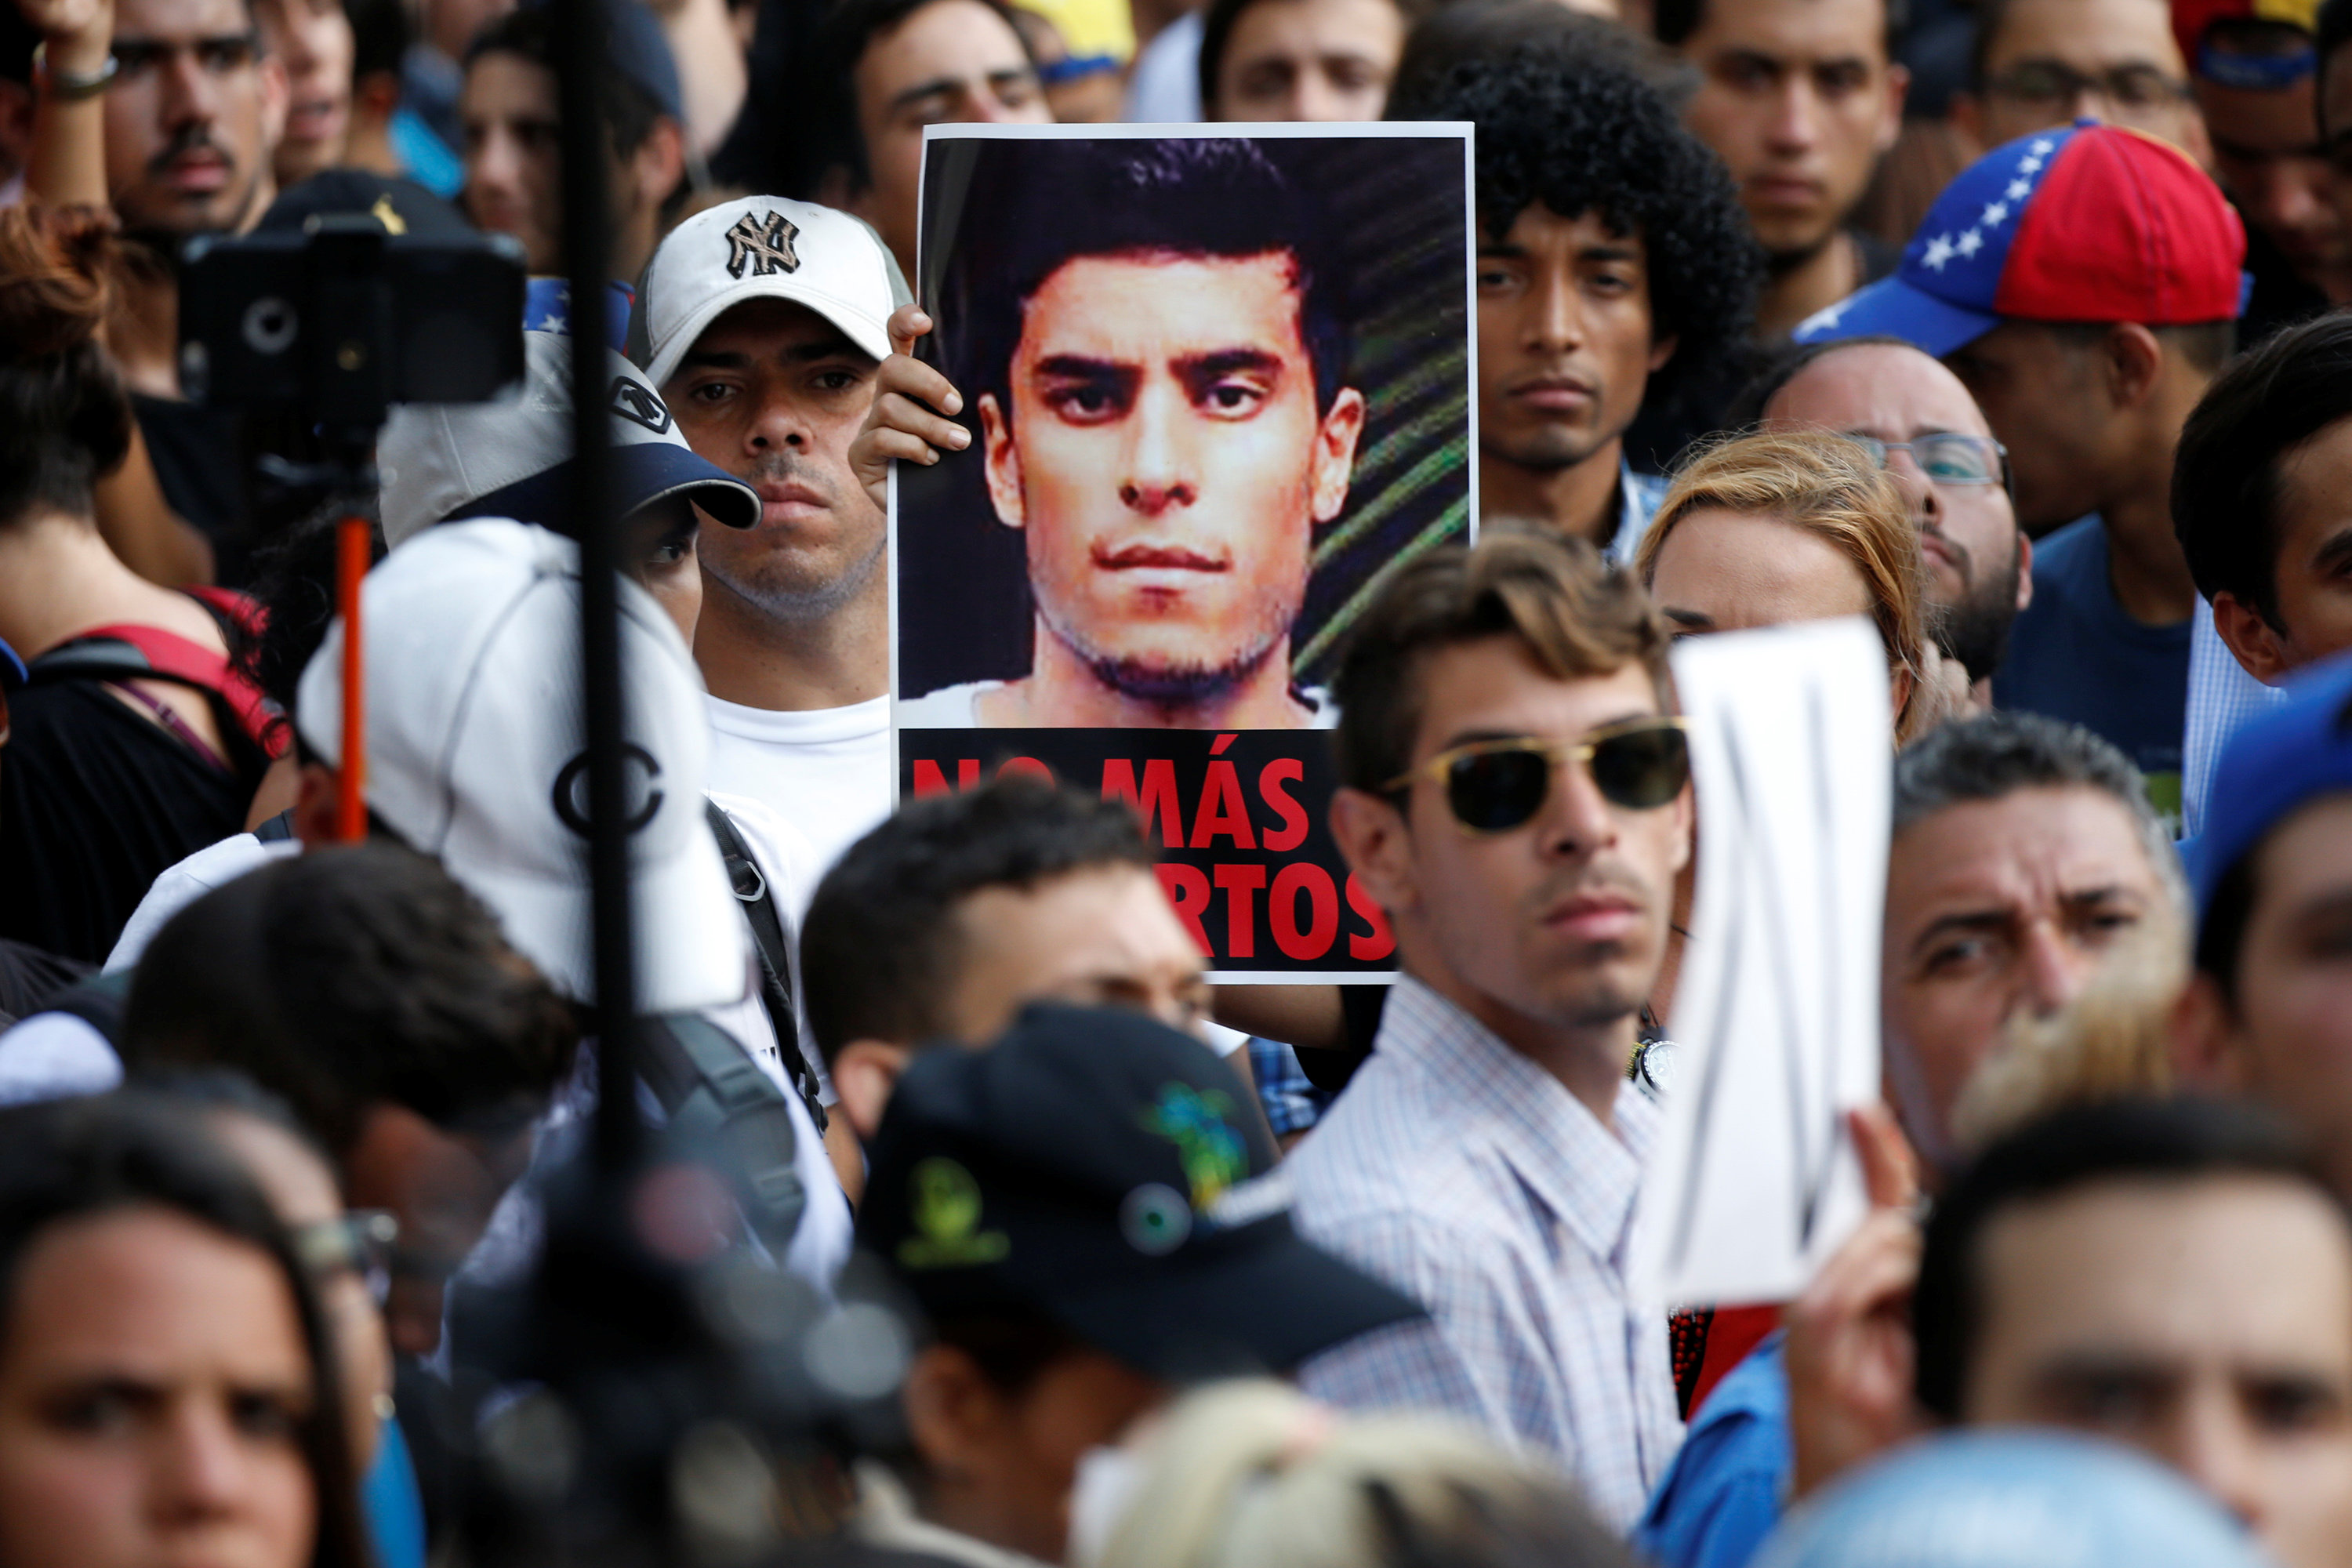 ¡Grande! La imagen más representativa de Juan Pernalete, el joven asesinado en Altamira (Foto)